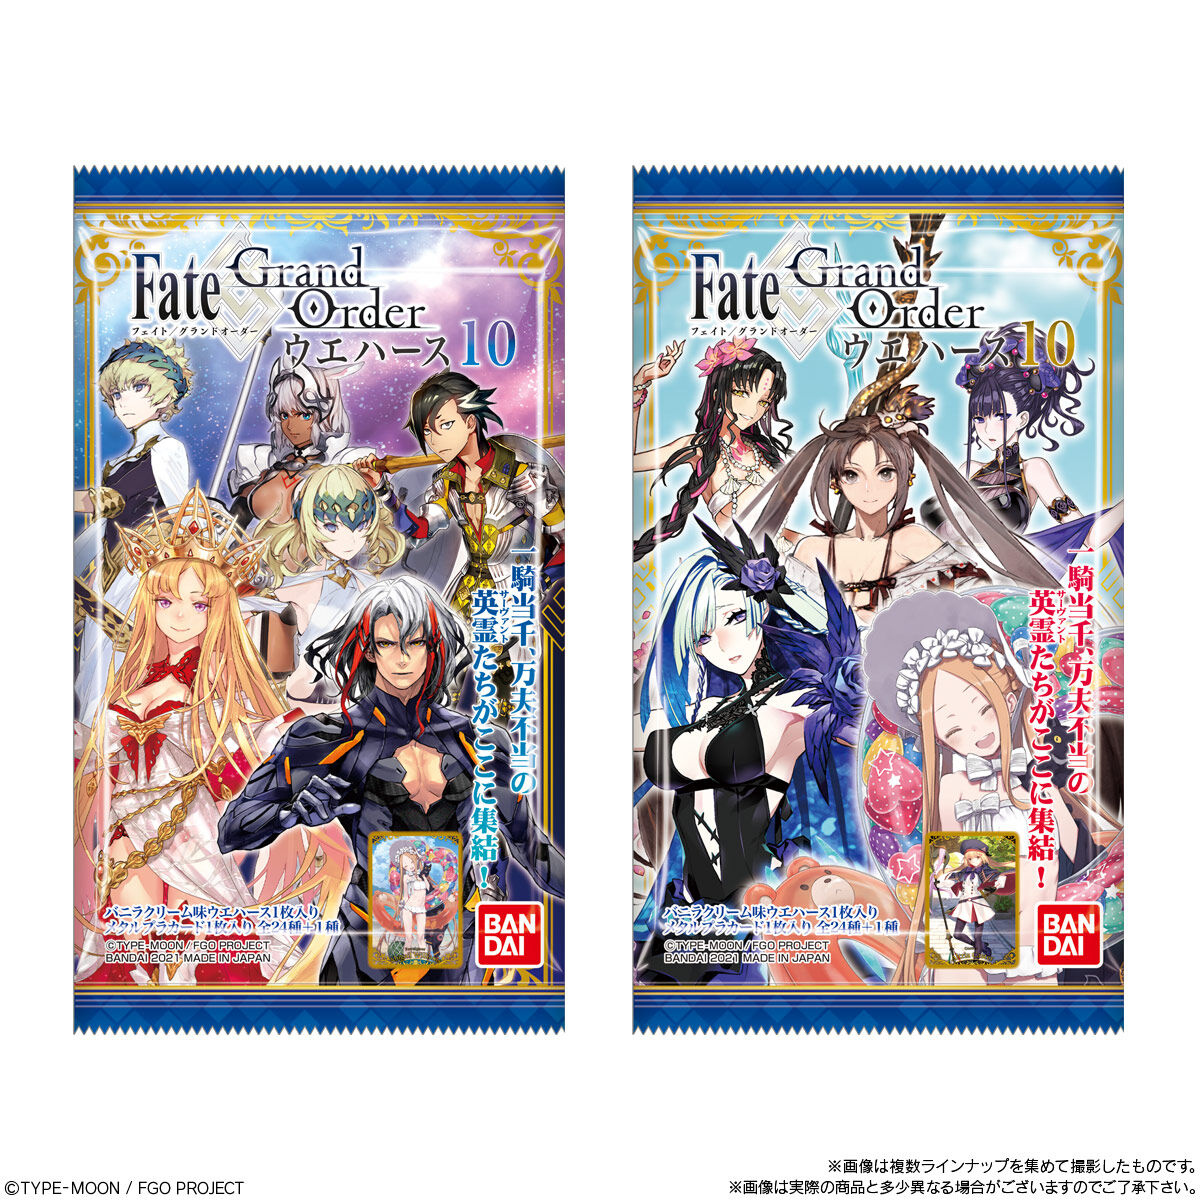 【食玩】Fate/Grand Order『Fate/Grand Order ウエハース10』20個入りBOX-007